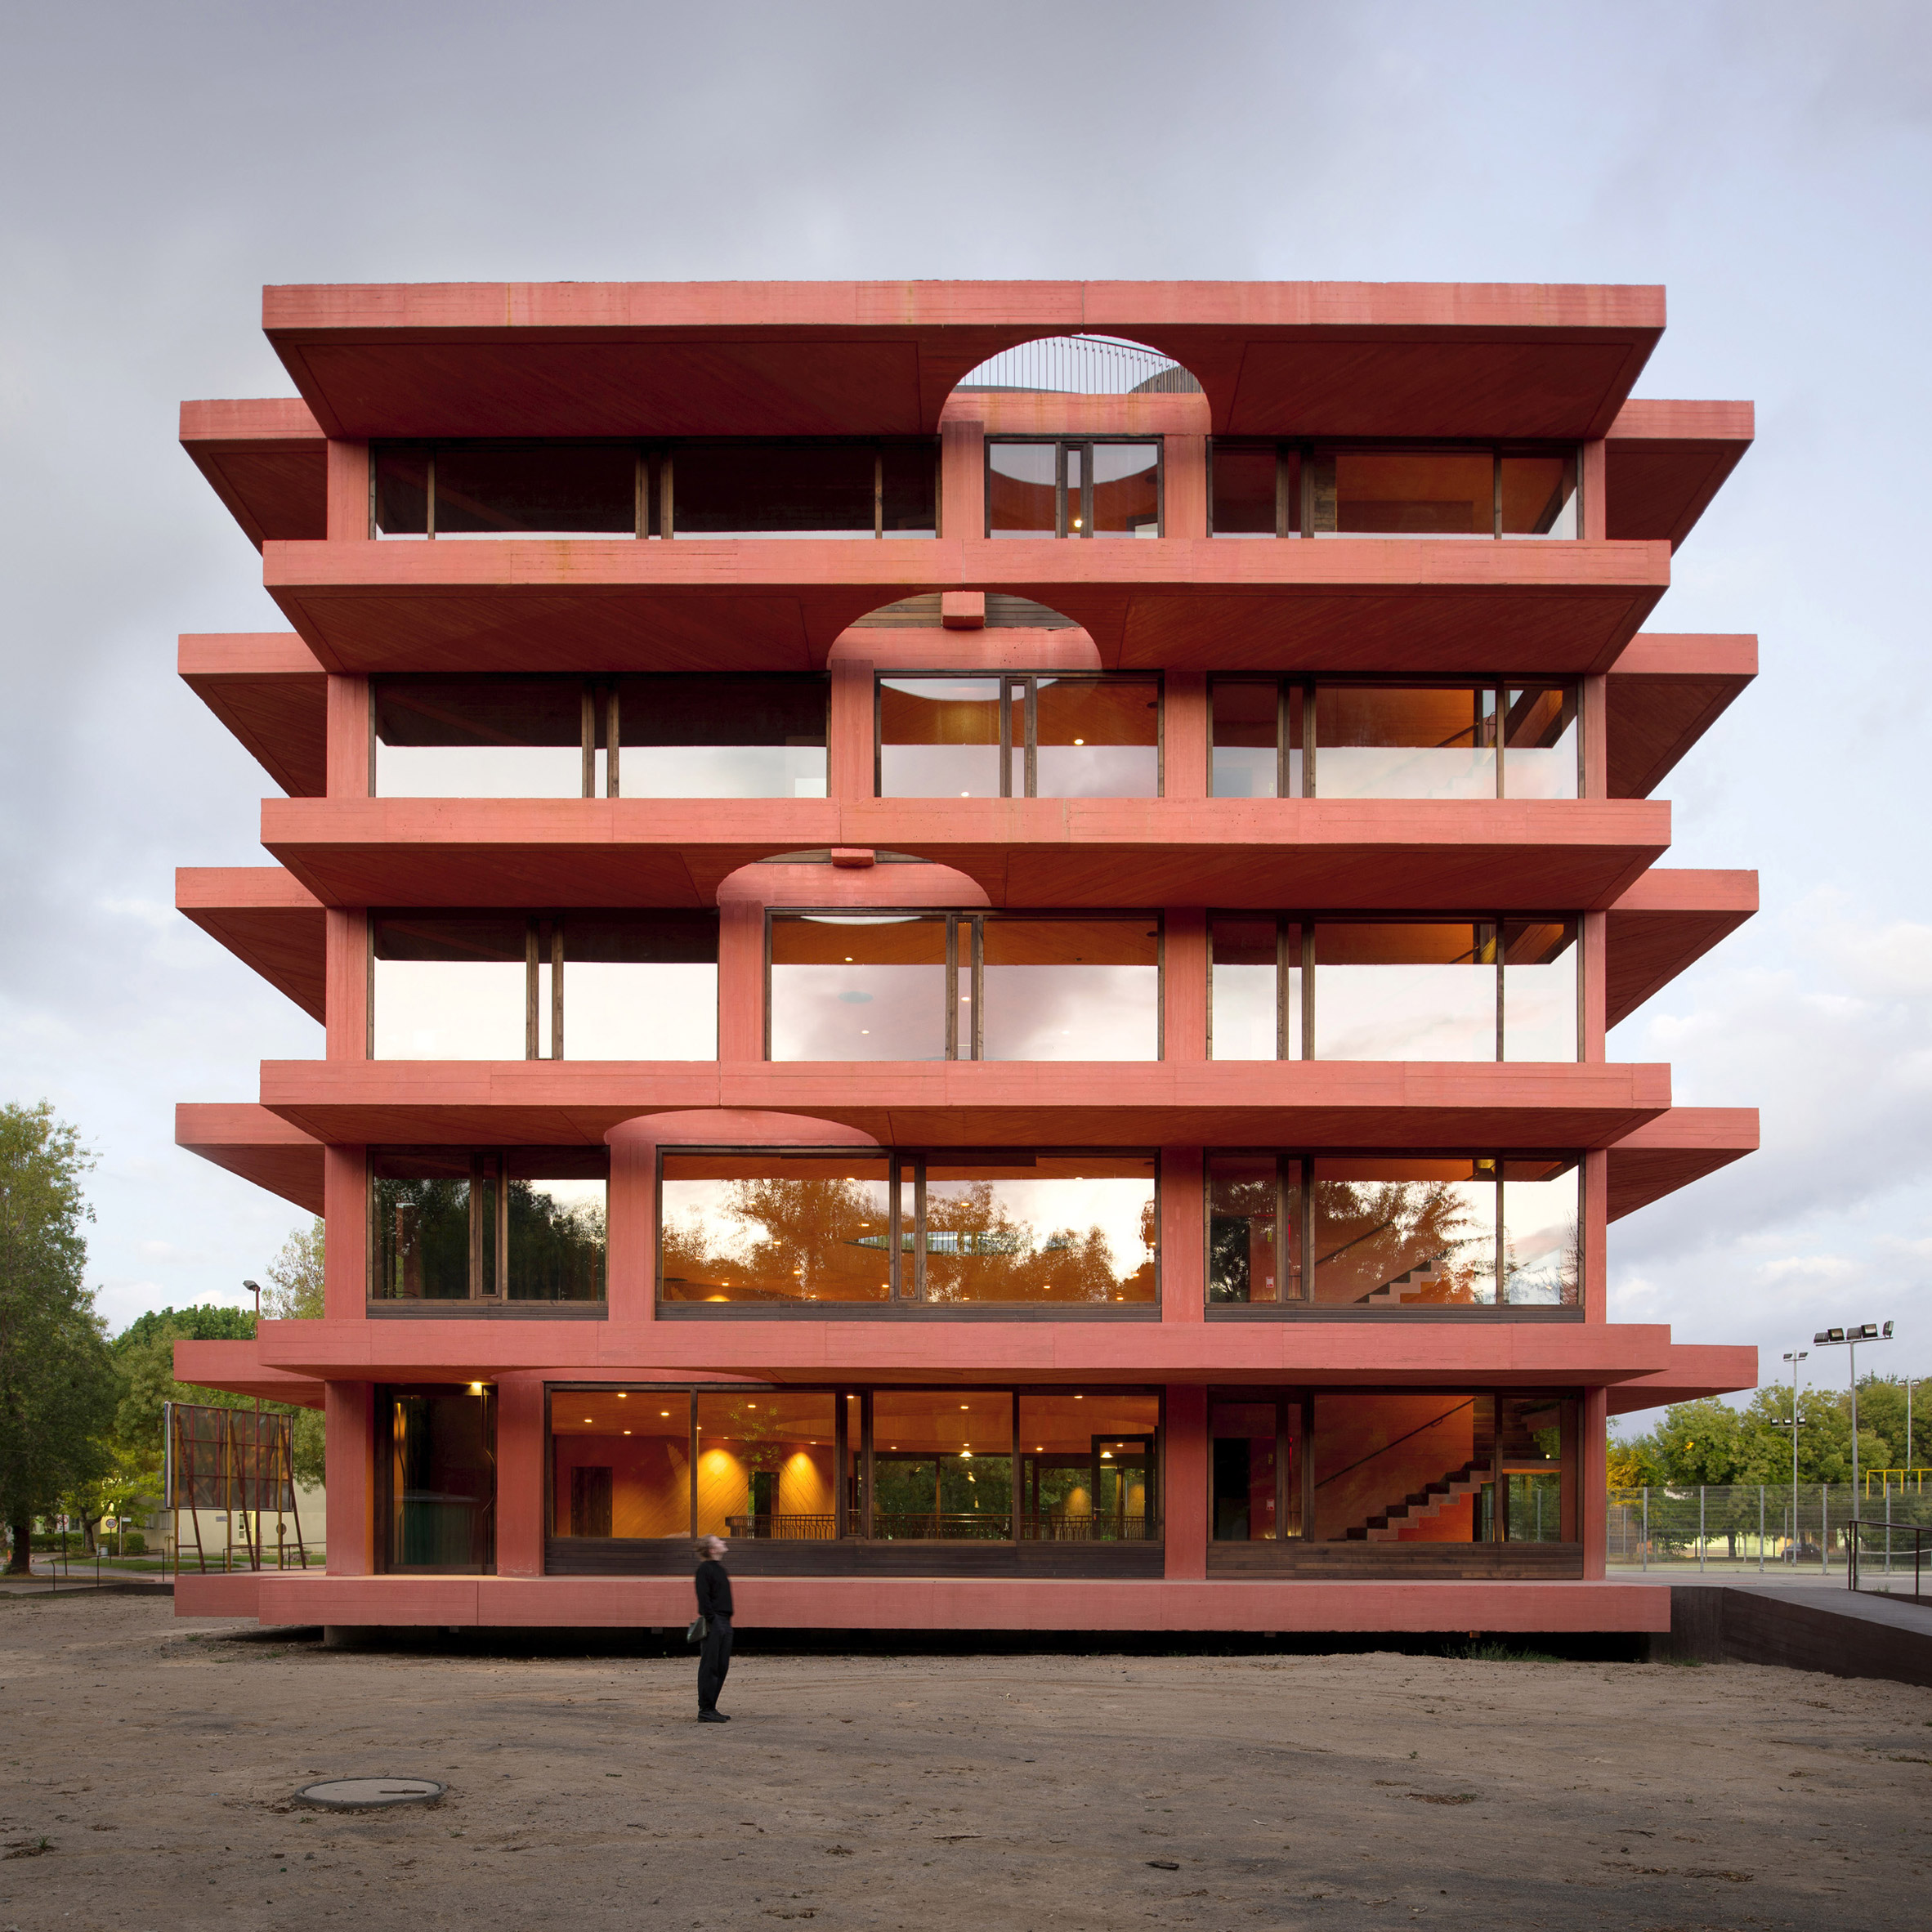 Exterior of INES innovation centre by Pezo von Ellrichshausen